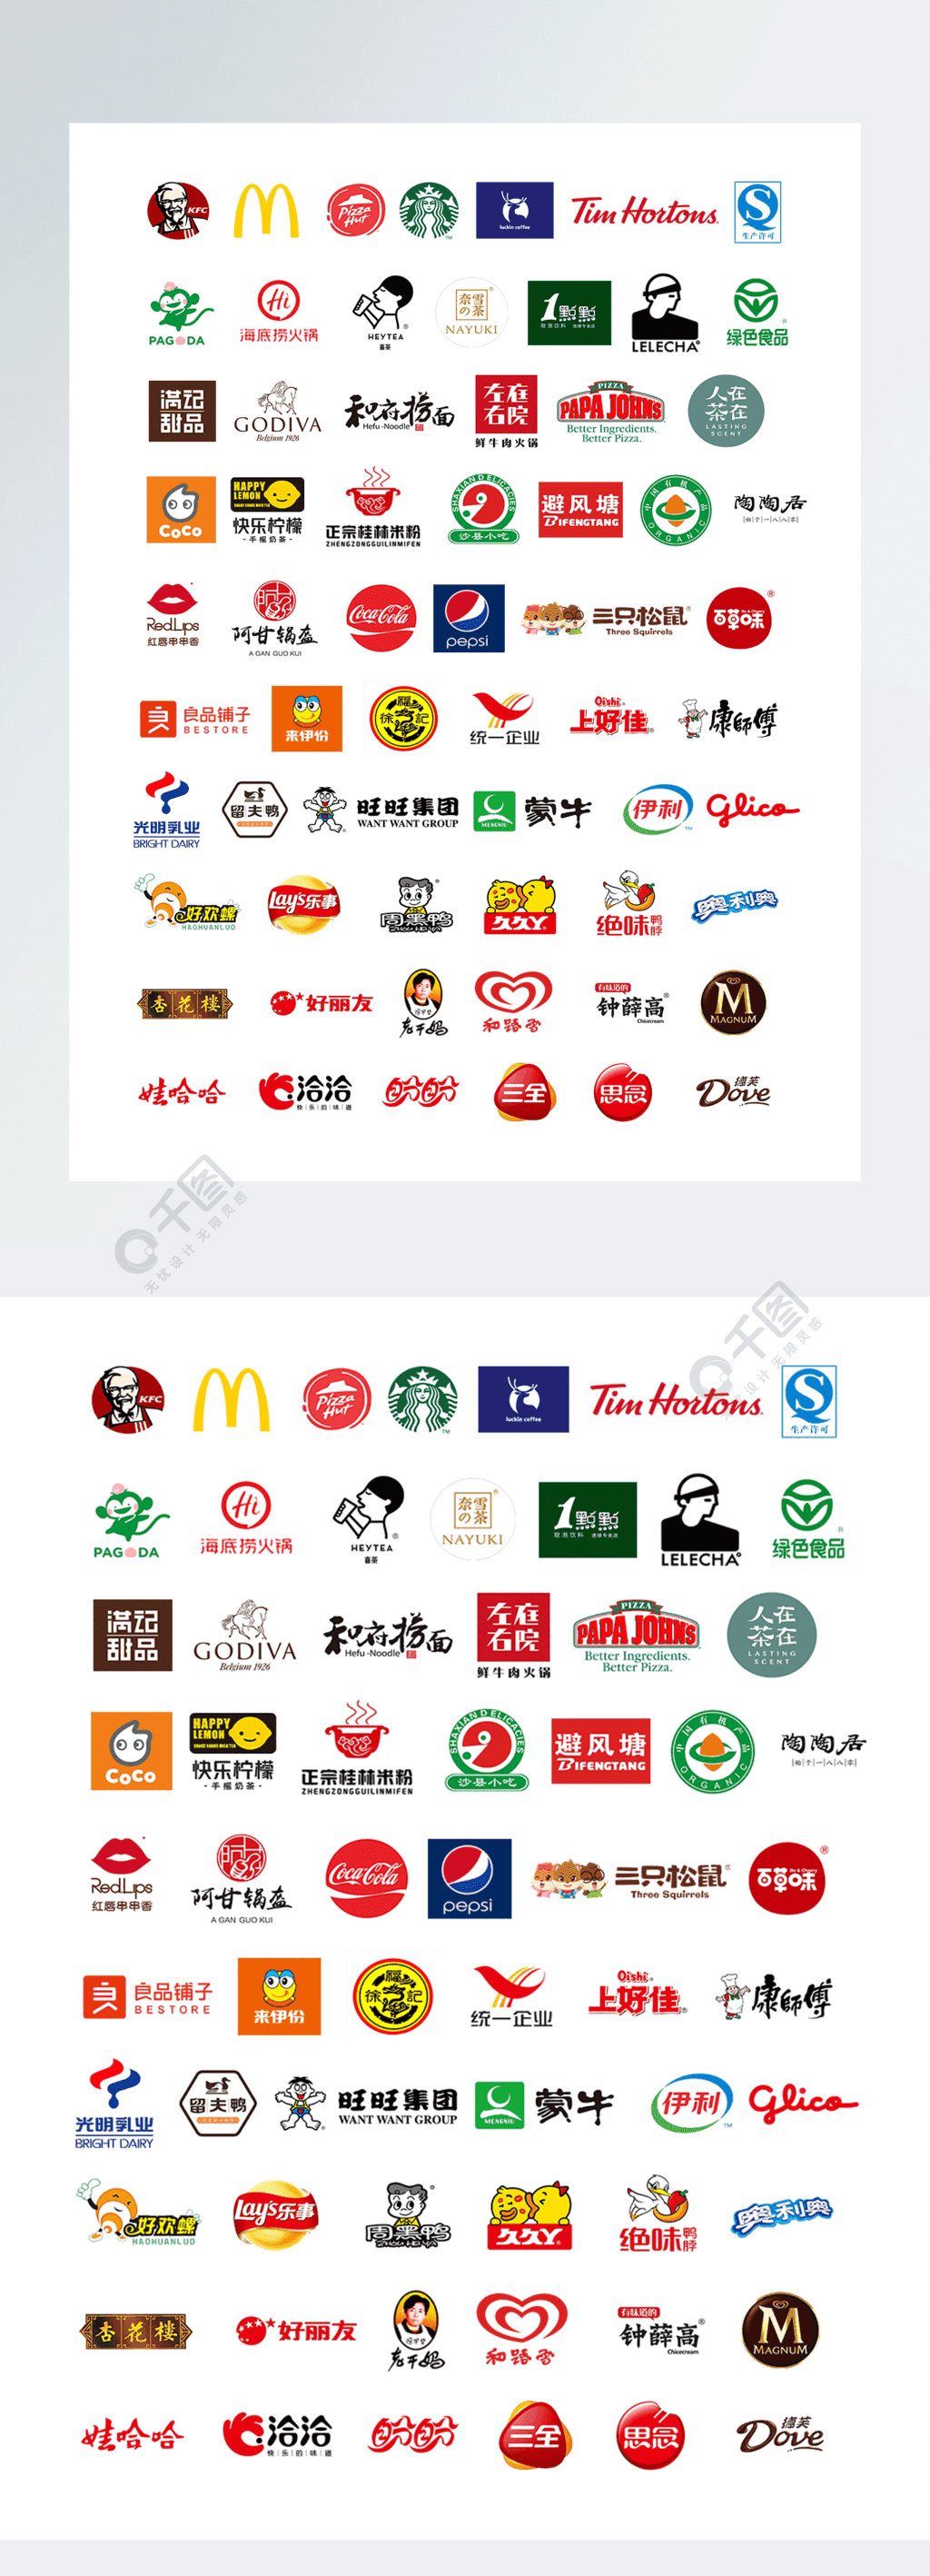 kfc肯德基麦当劳星巴克喜茶等知名食品餐饮品牌logo知名企业icon图标